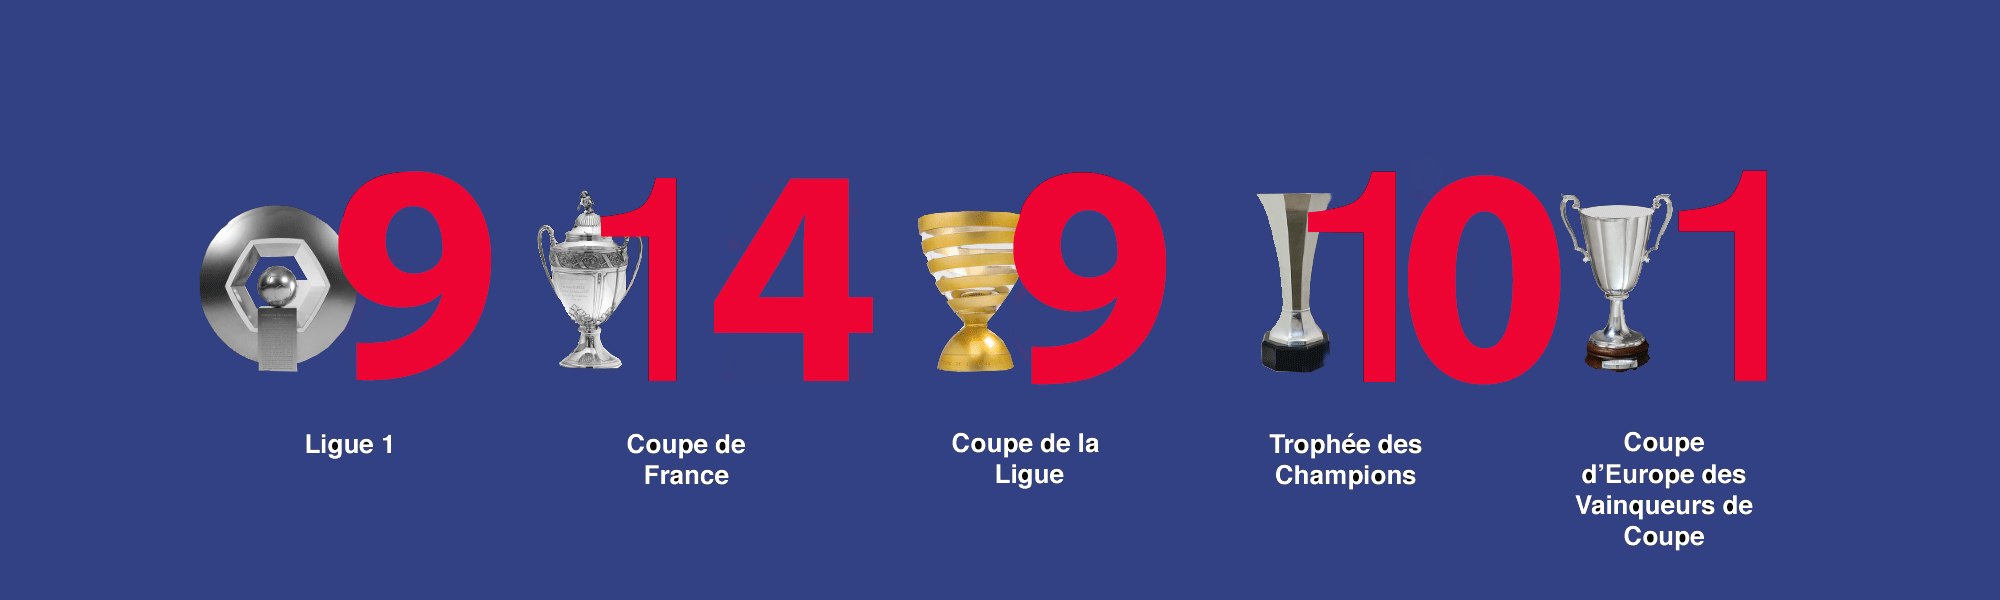 Trophées PSG